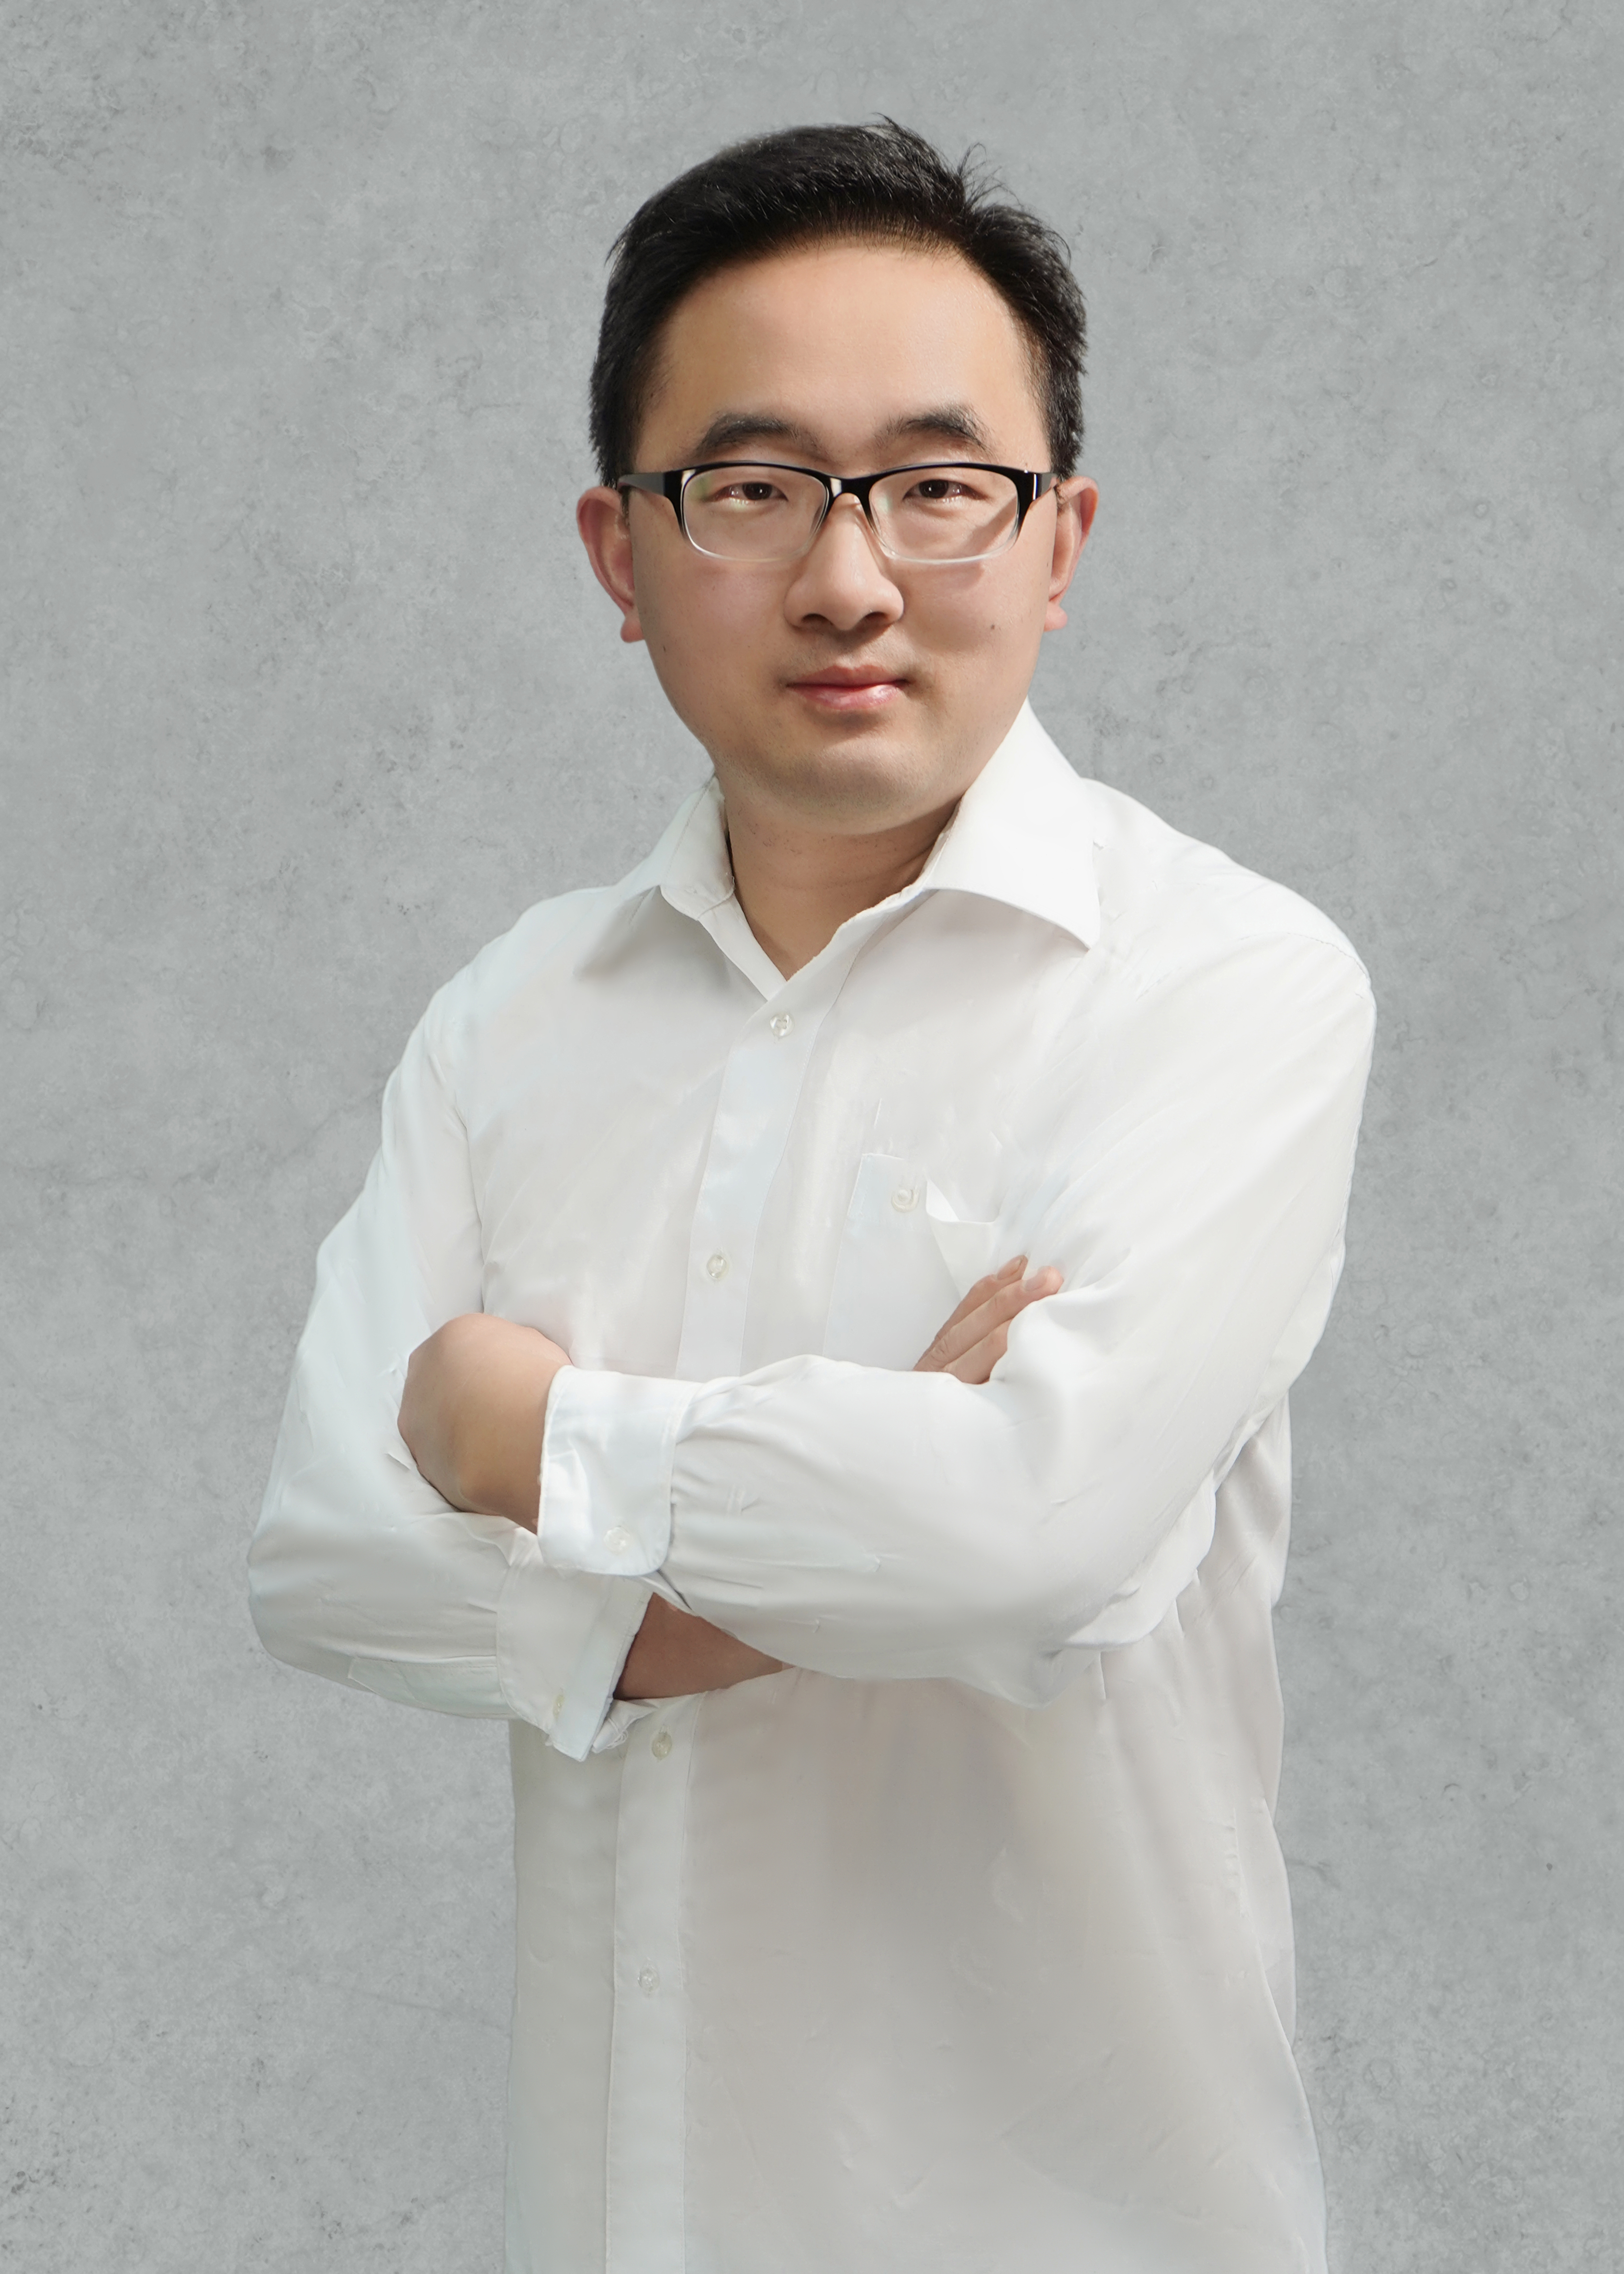 胡海峰 计算机领域工程硕士 副教授